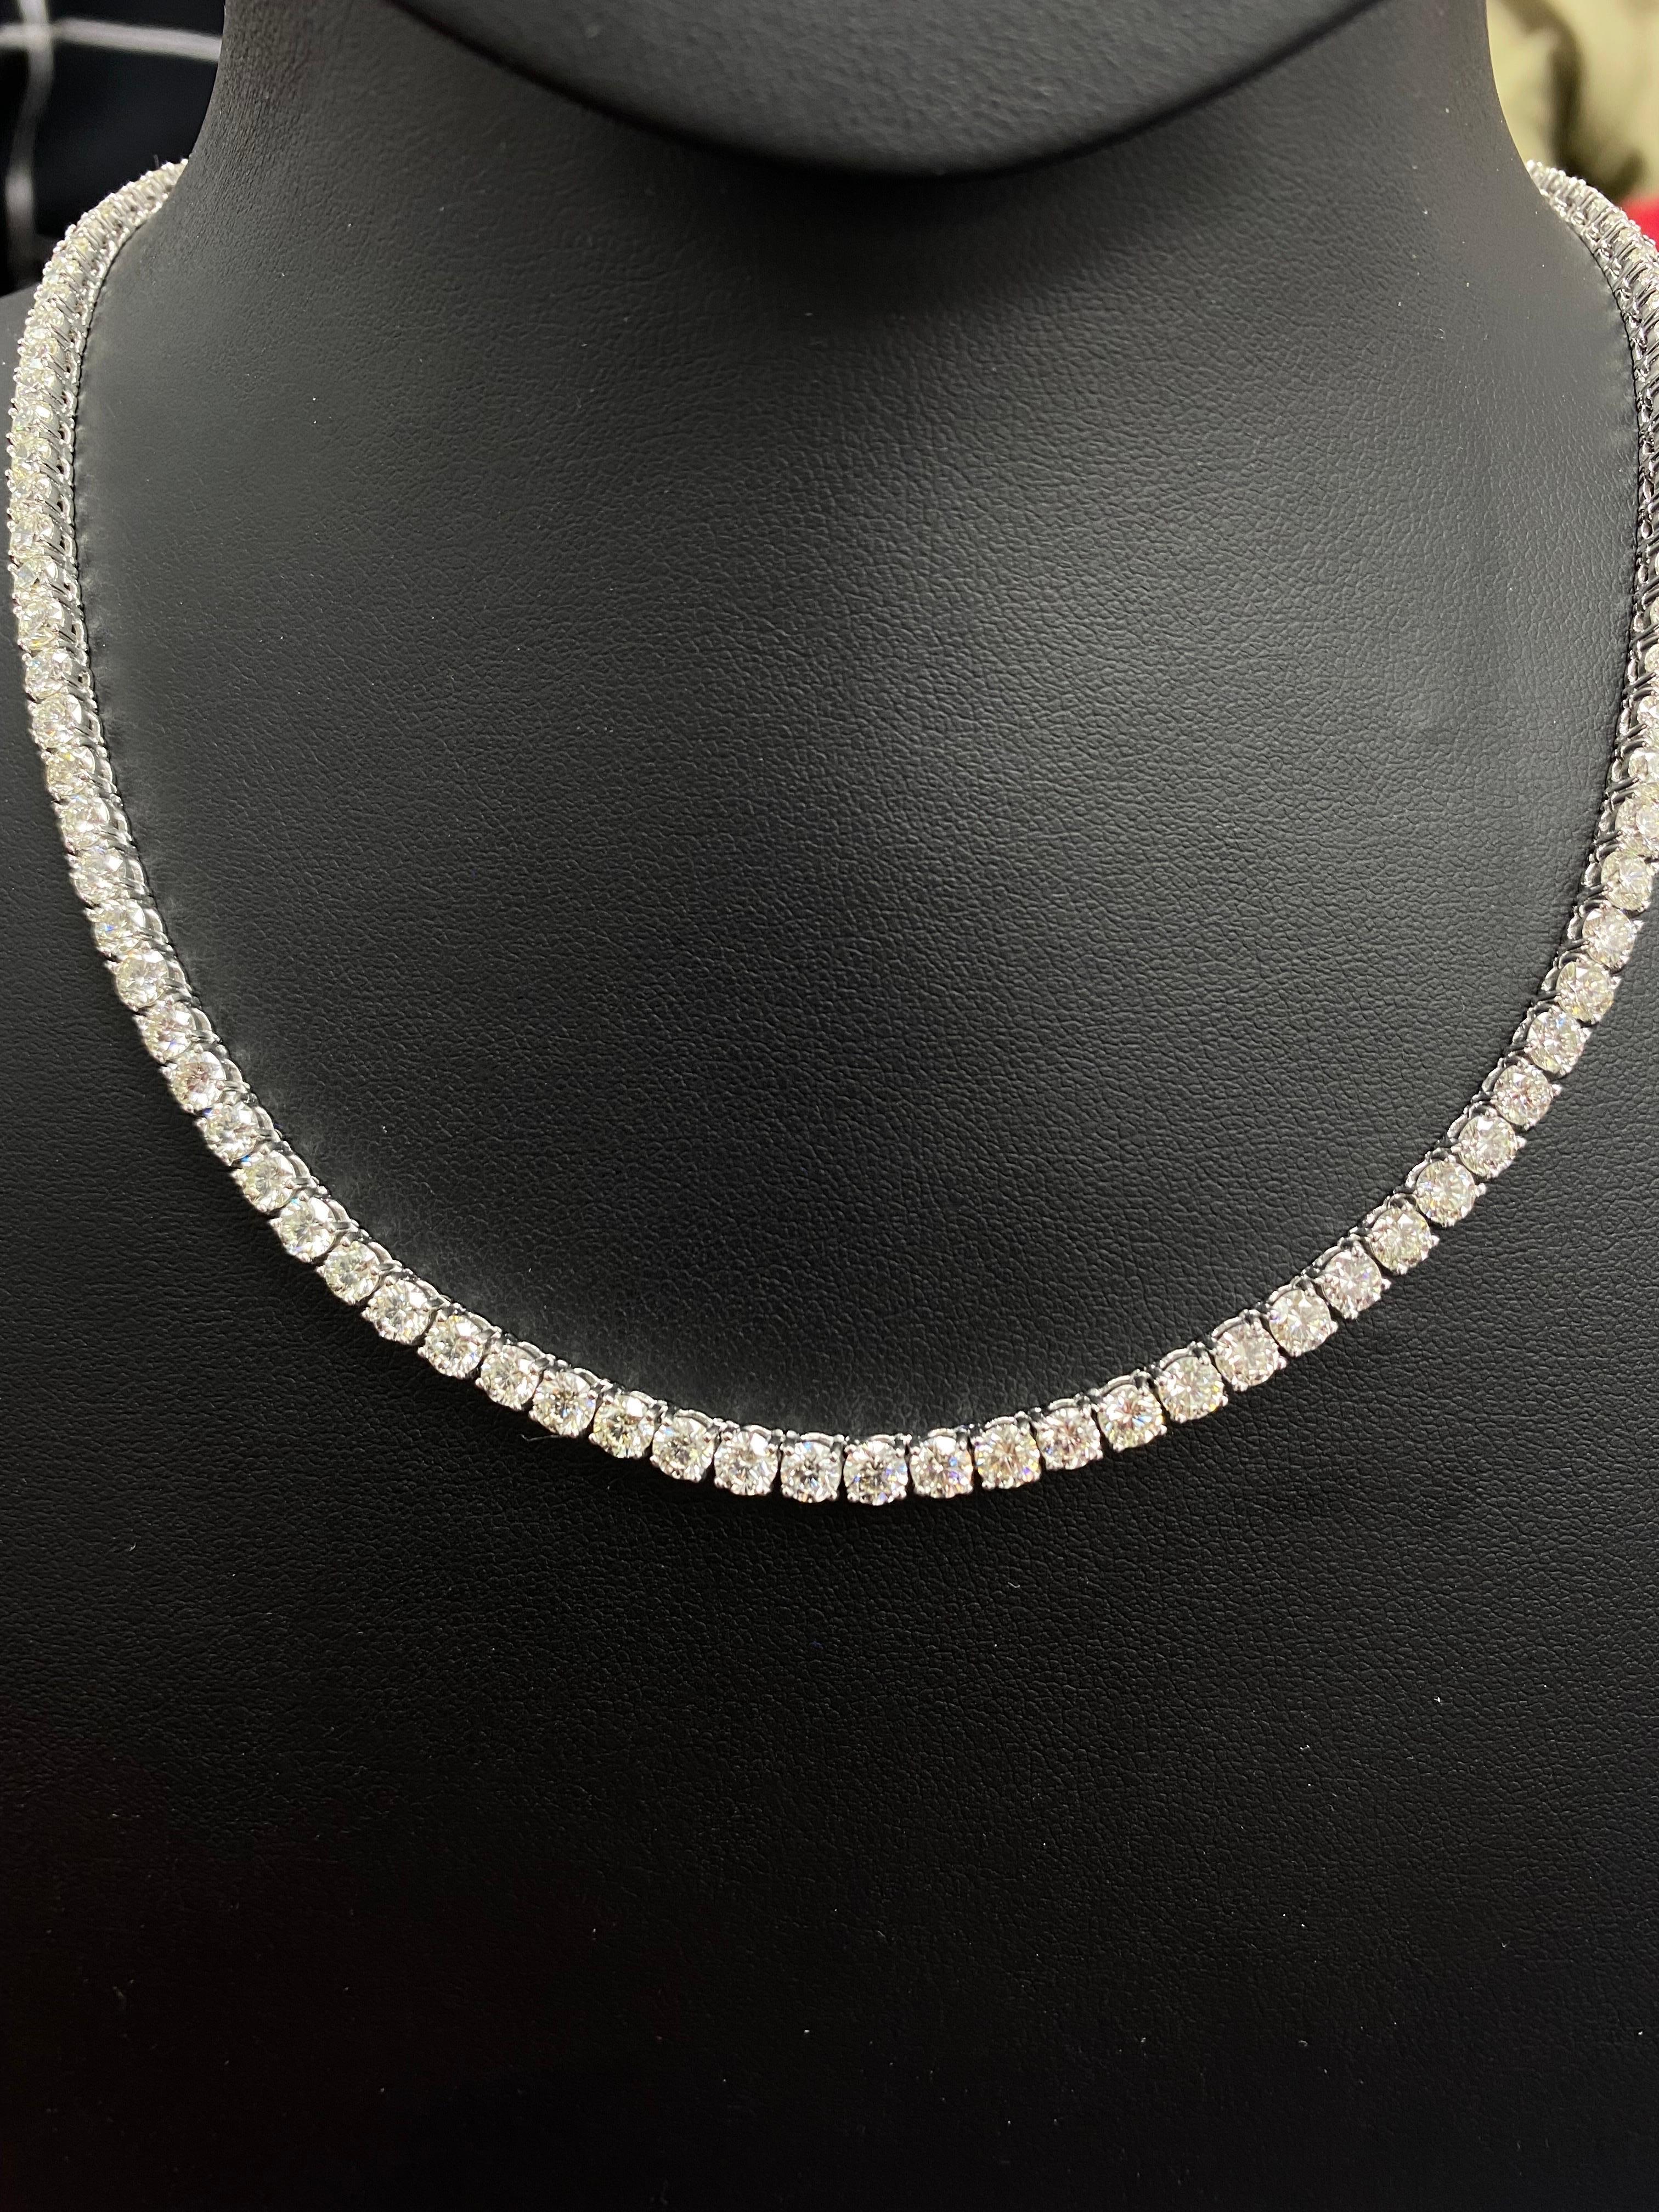 Ce collier tennis en diamants présente des diamants ronds magnifiquement taillés et sertis dans de l'or blanc massif 18 carats. Possibilité de personnalisation - pour les colliers et les bracelets de tennis. N'hésitez pas à nous envoyer un message